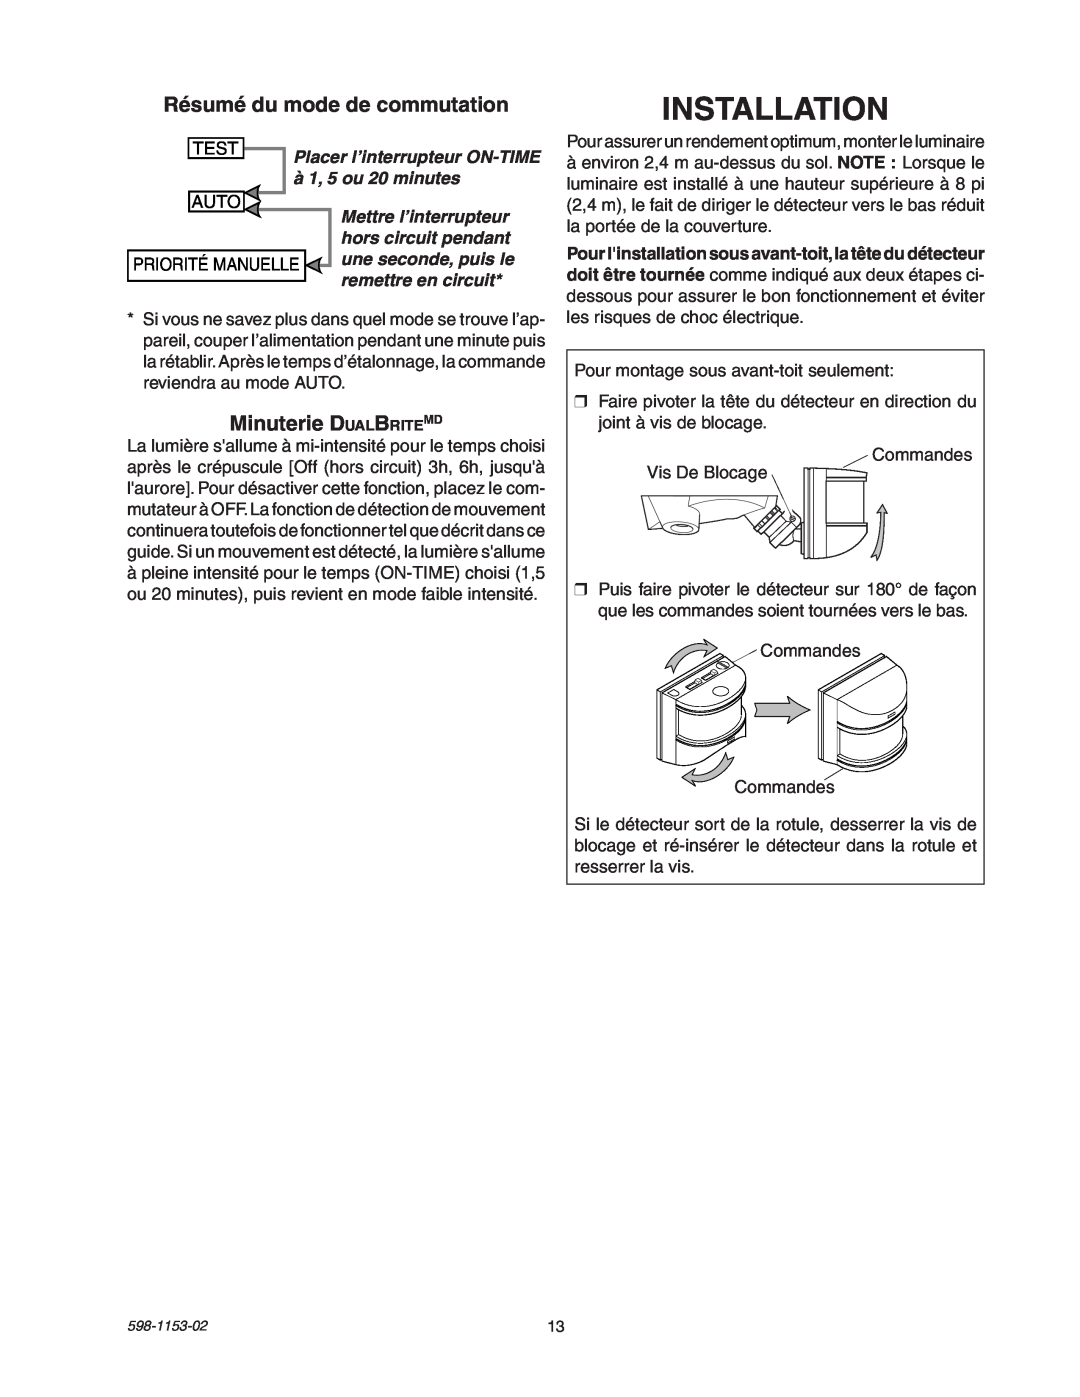 Heath Zenith SH-5316 manual Installation, Résumé du mode de commutation, Minuterie DualBriteMD 